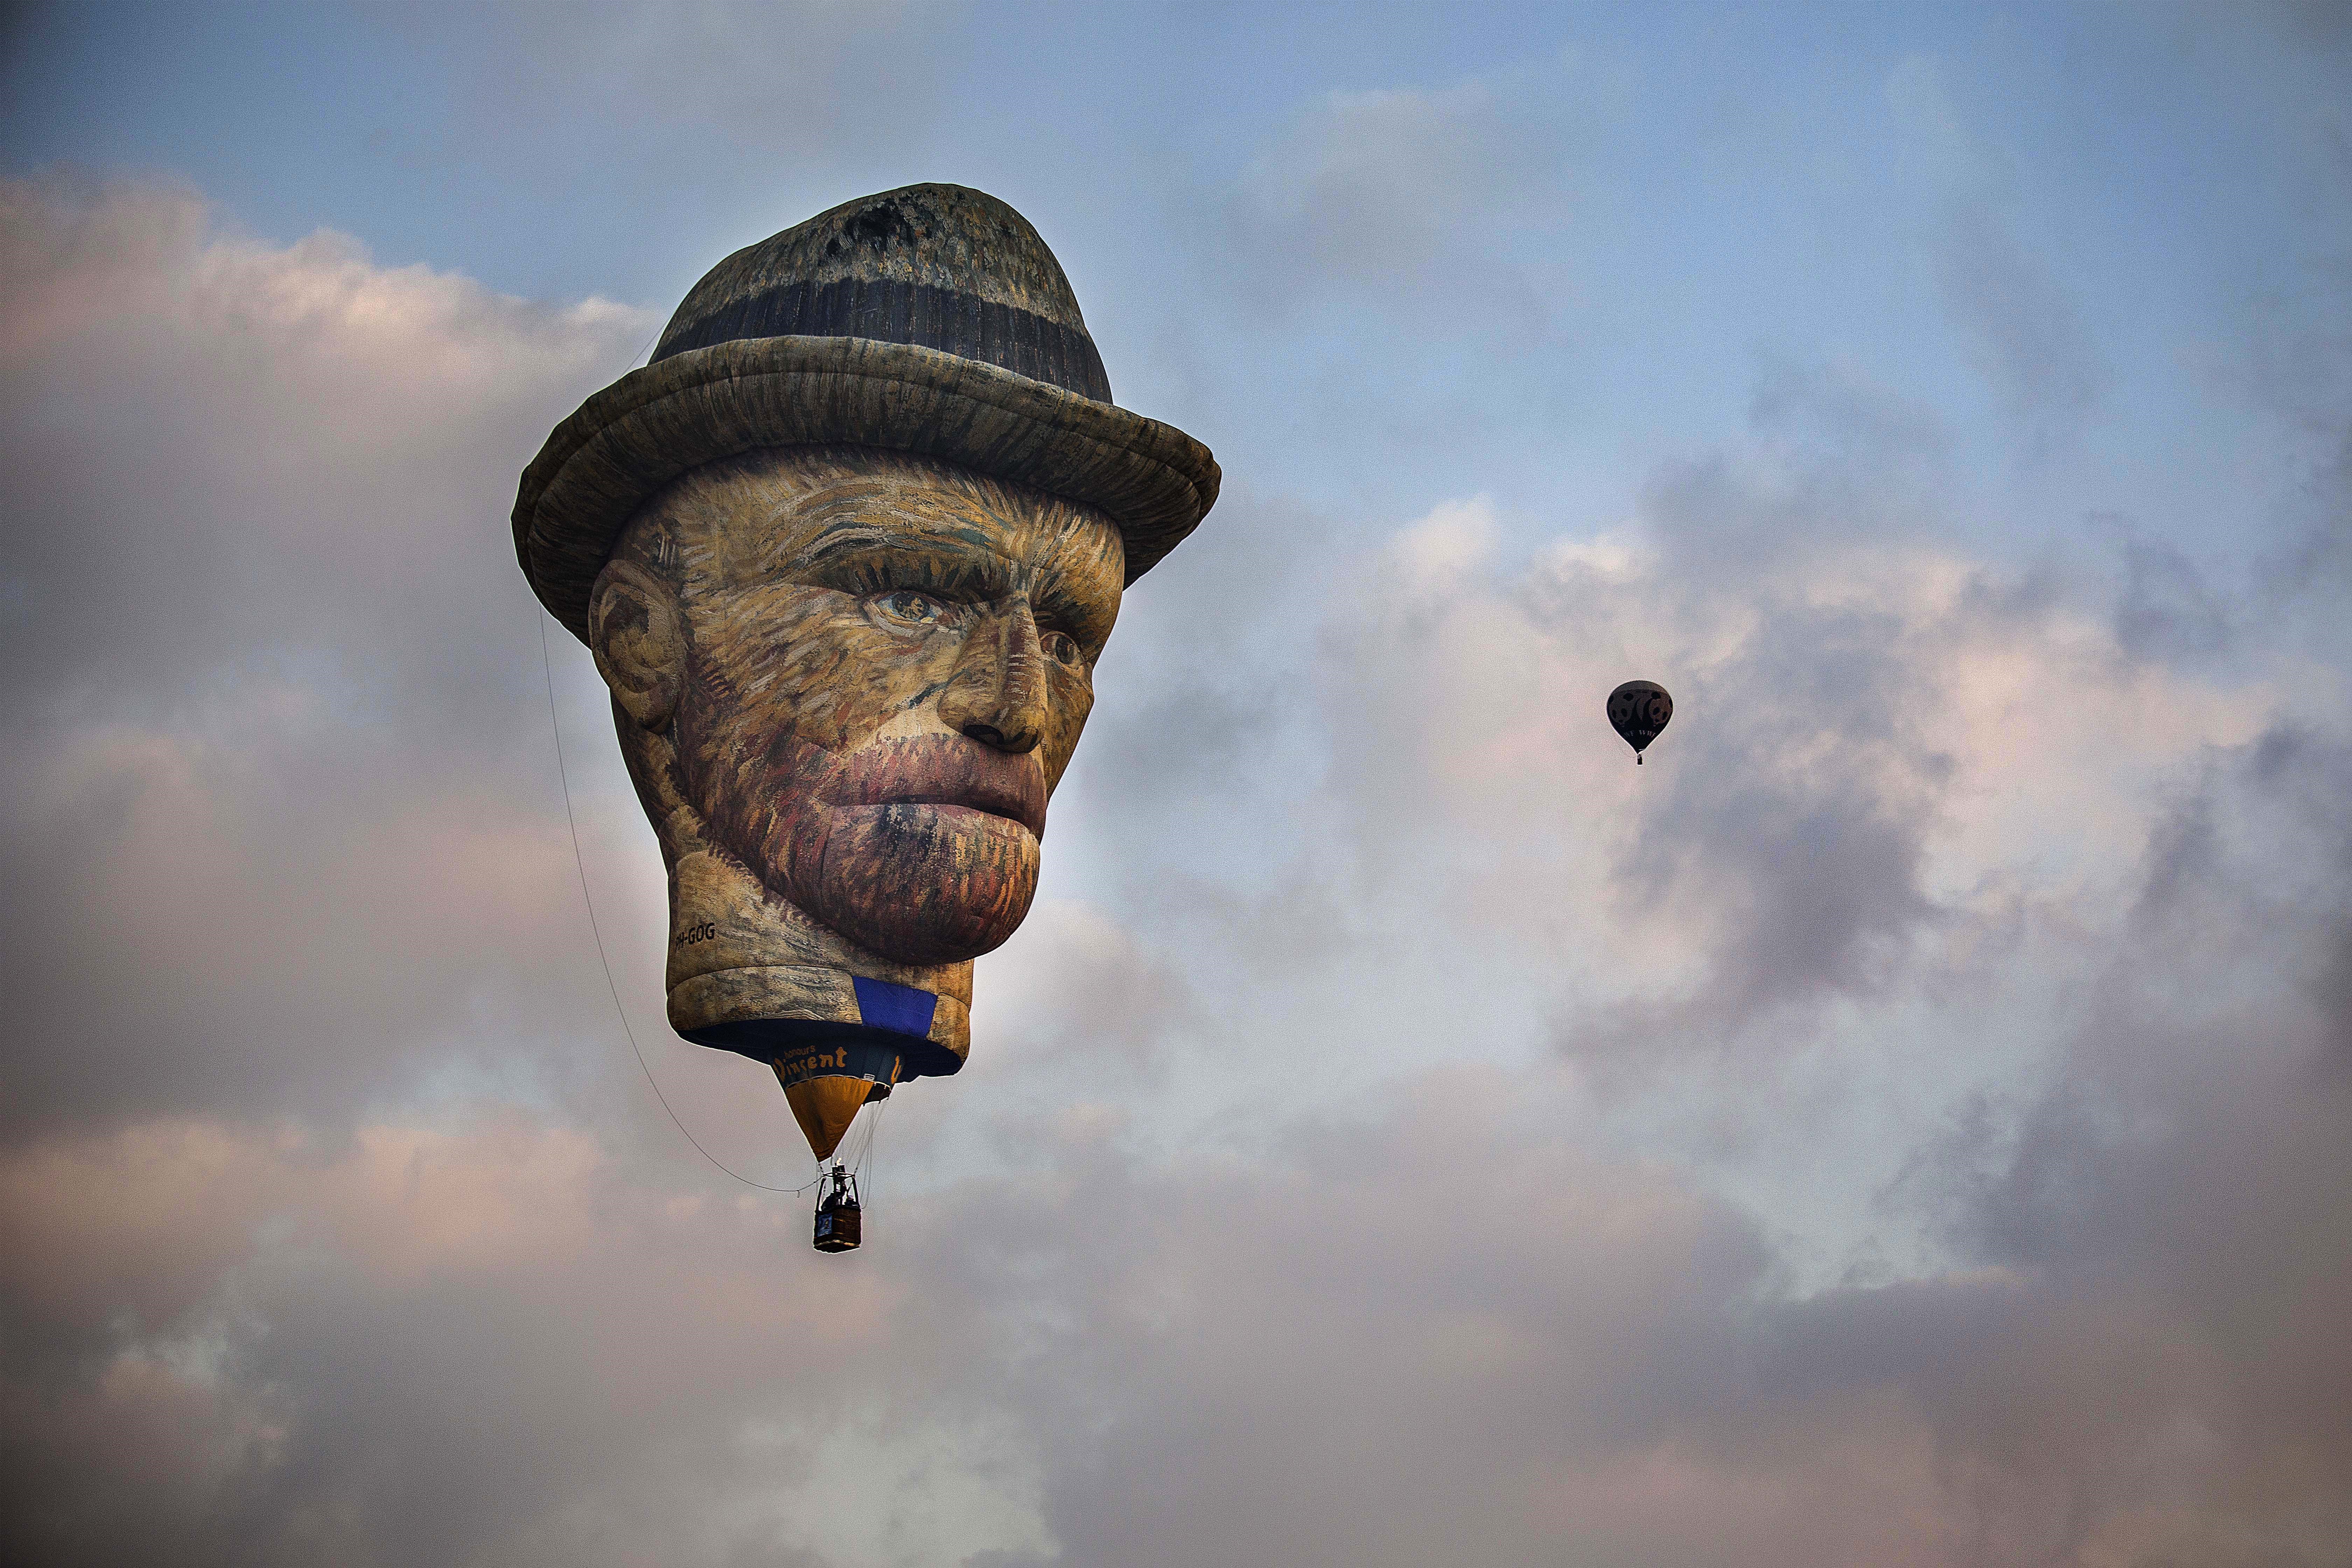 Kolosszális van Gogh-fej bukkant fel Izrael egén